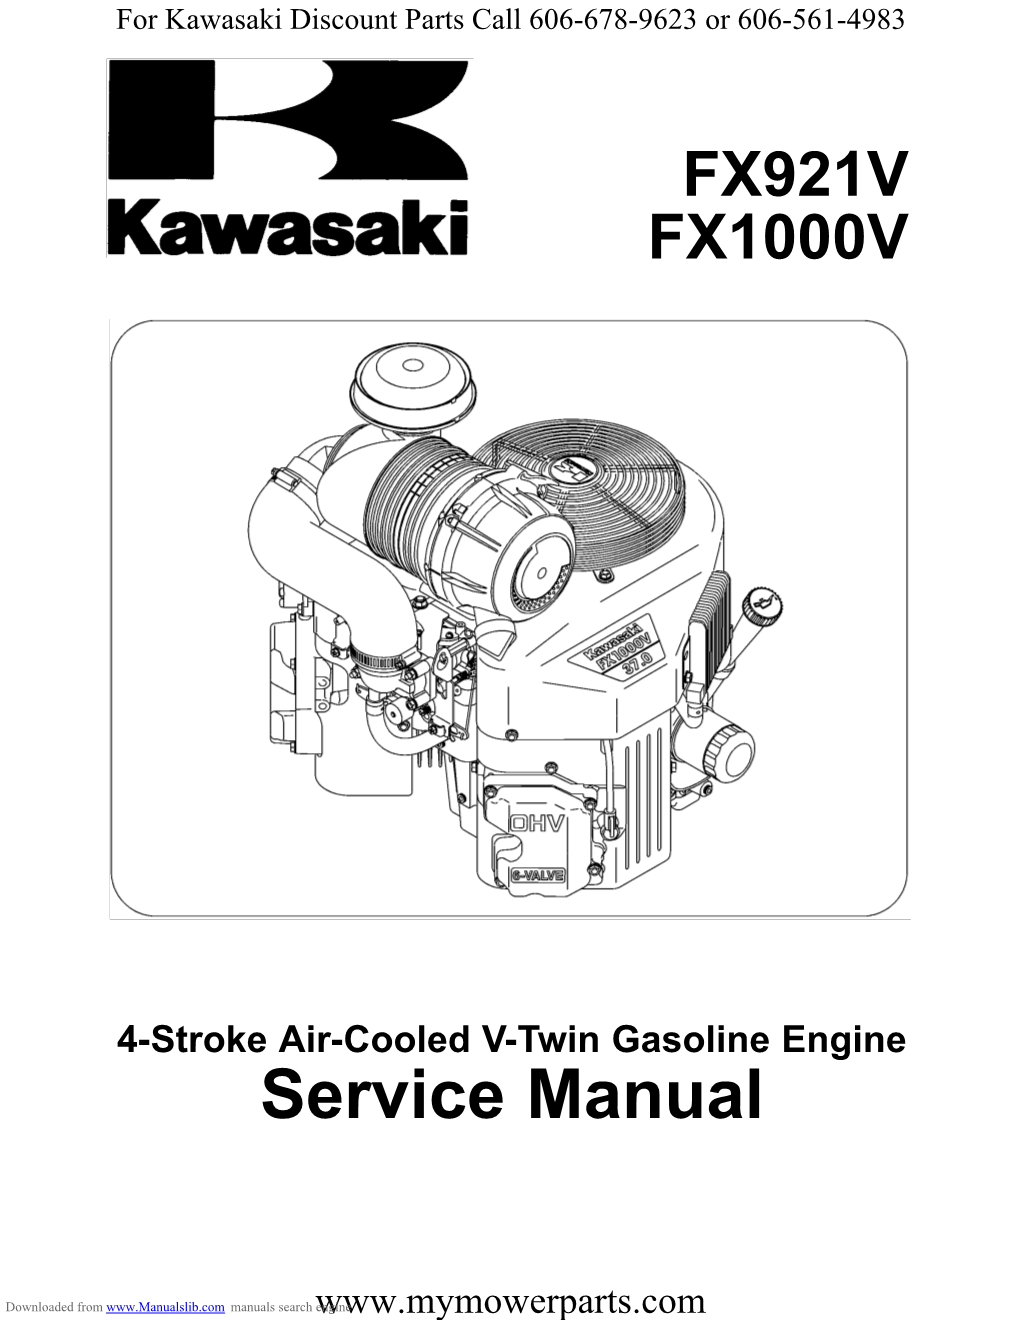 Kawasaki FX921V and FX1000V Service Manuel.Pdf